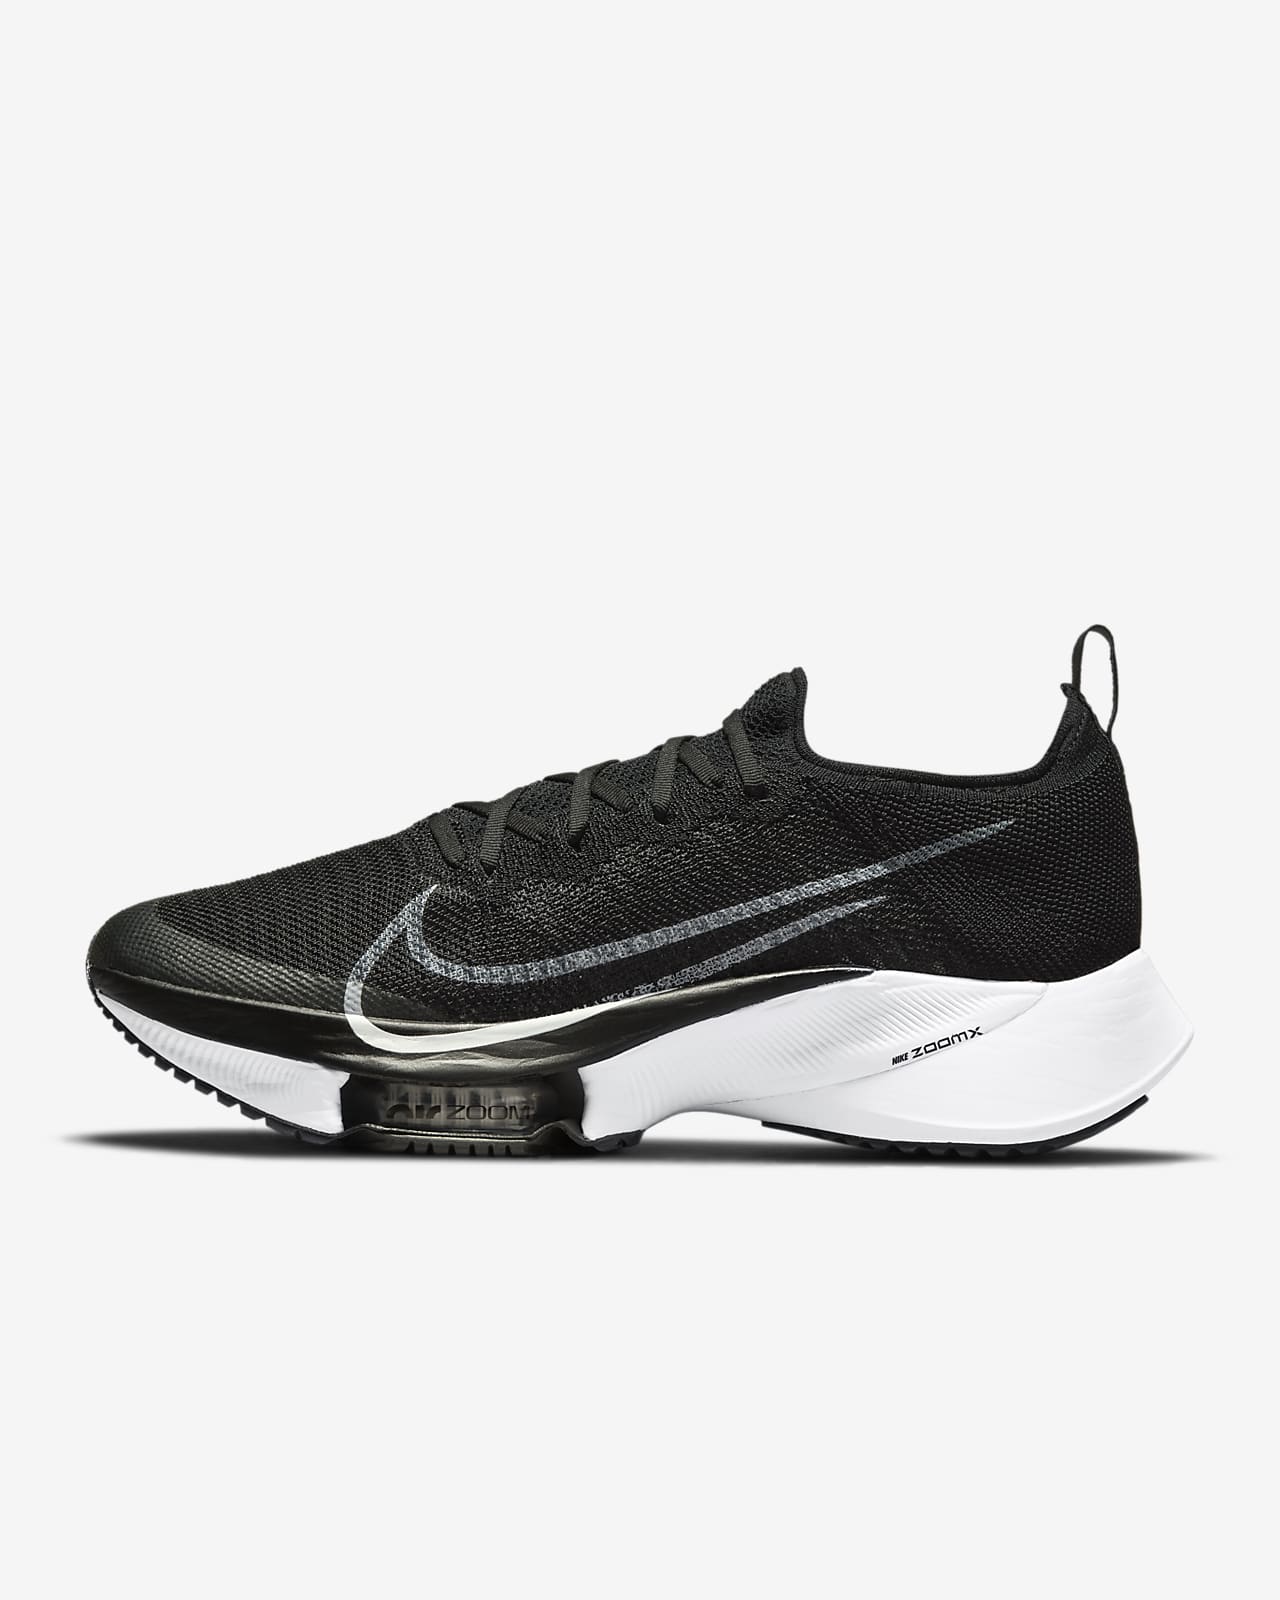 Ανδρικά παπούτσια για τρέξιμο σε δρόμο Nike Tempo